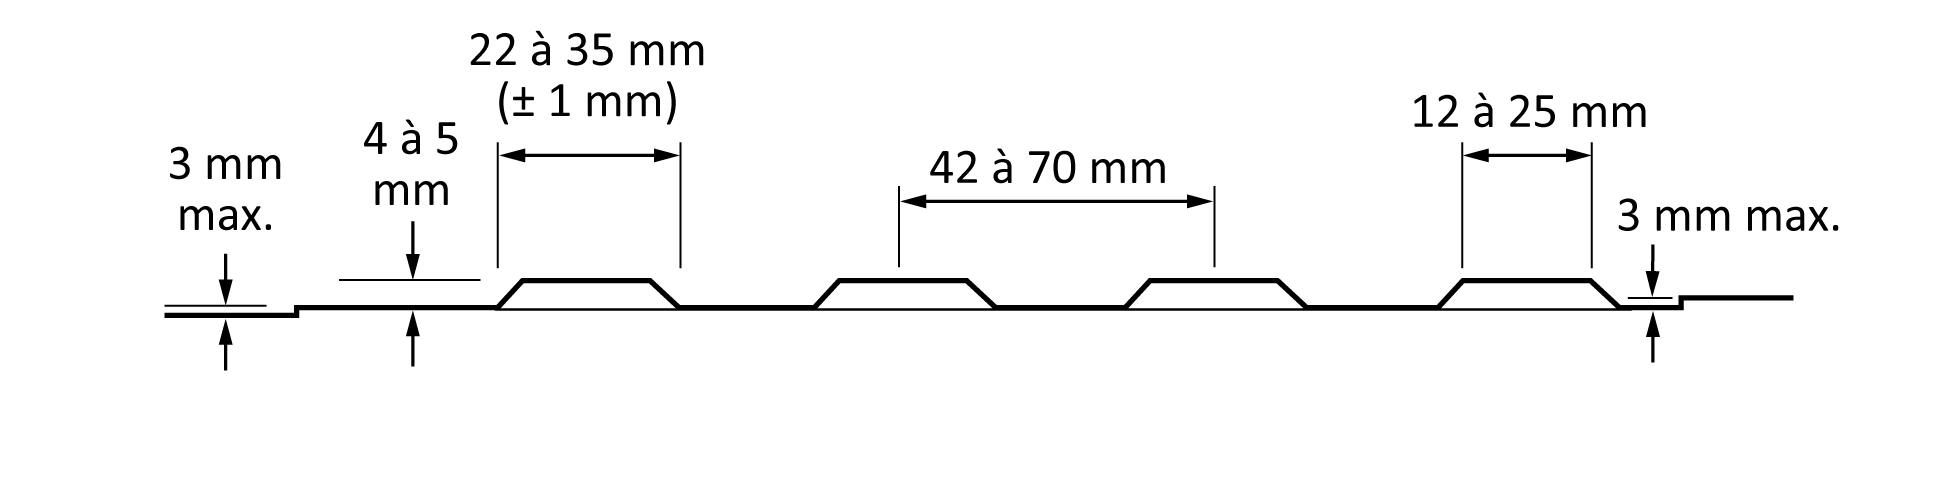 La figure montre une illustration en coupe transversale de dômes tronqués. La différence entre le niveau de la surface de base et la surface sur laquelle les dômes sont appliqués est indiquée comme étant de 3 mm au maximum. Sont également indiquées la hauteur maximale de 4 mm à 5 mm du dôme, la largeur maximale de 22 mm à 35 mm ( ± 1 mm) de la base de chaque dôme, la largeur maximale de 12 mm à 25 mm du sommet de chaque dôme et la distance maximale de 42 mm à 70 mm entre les centres des dômes. 